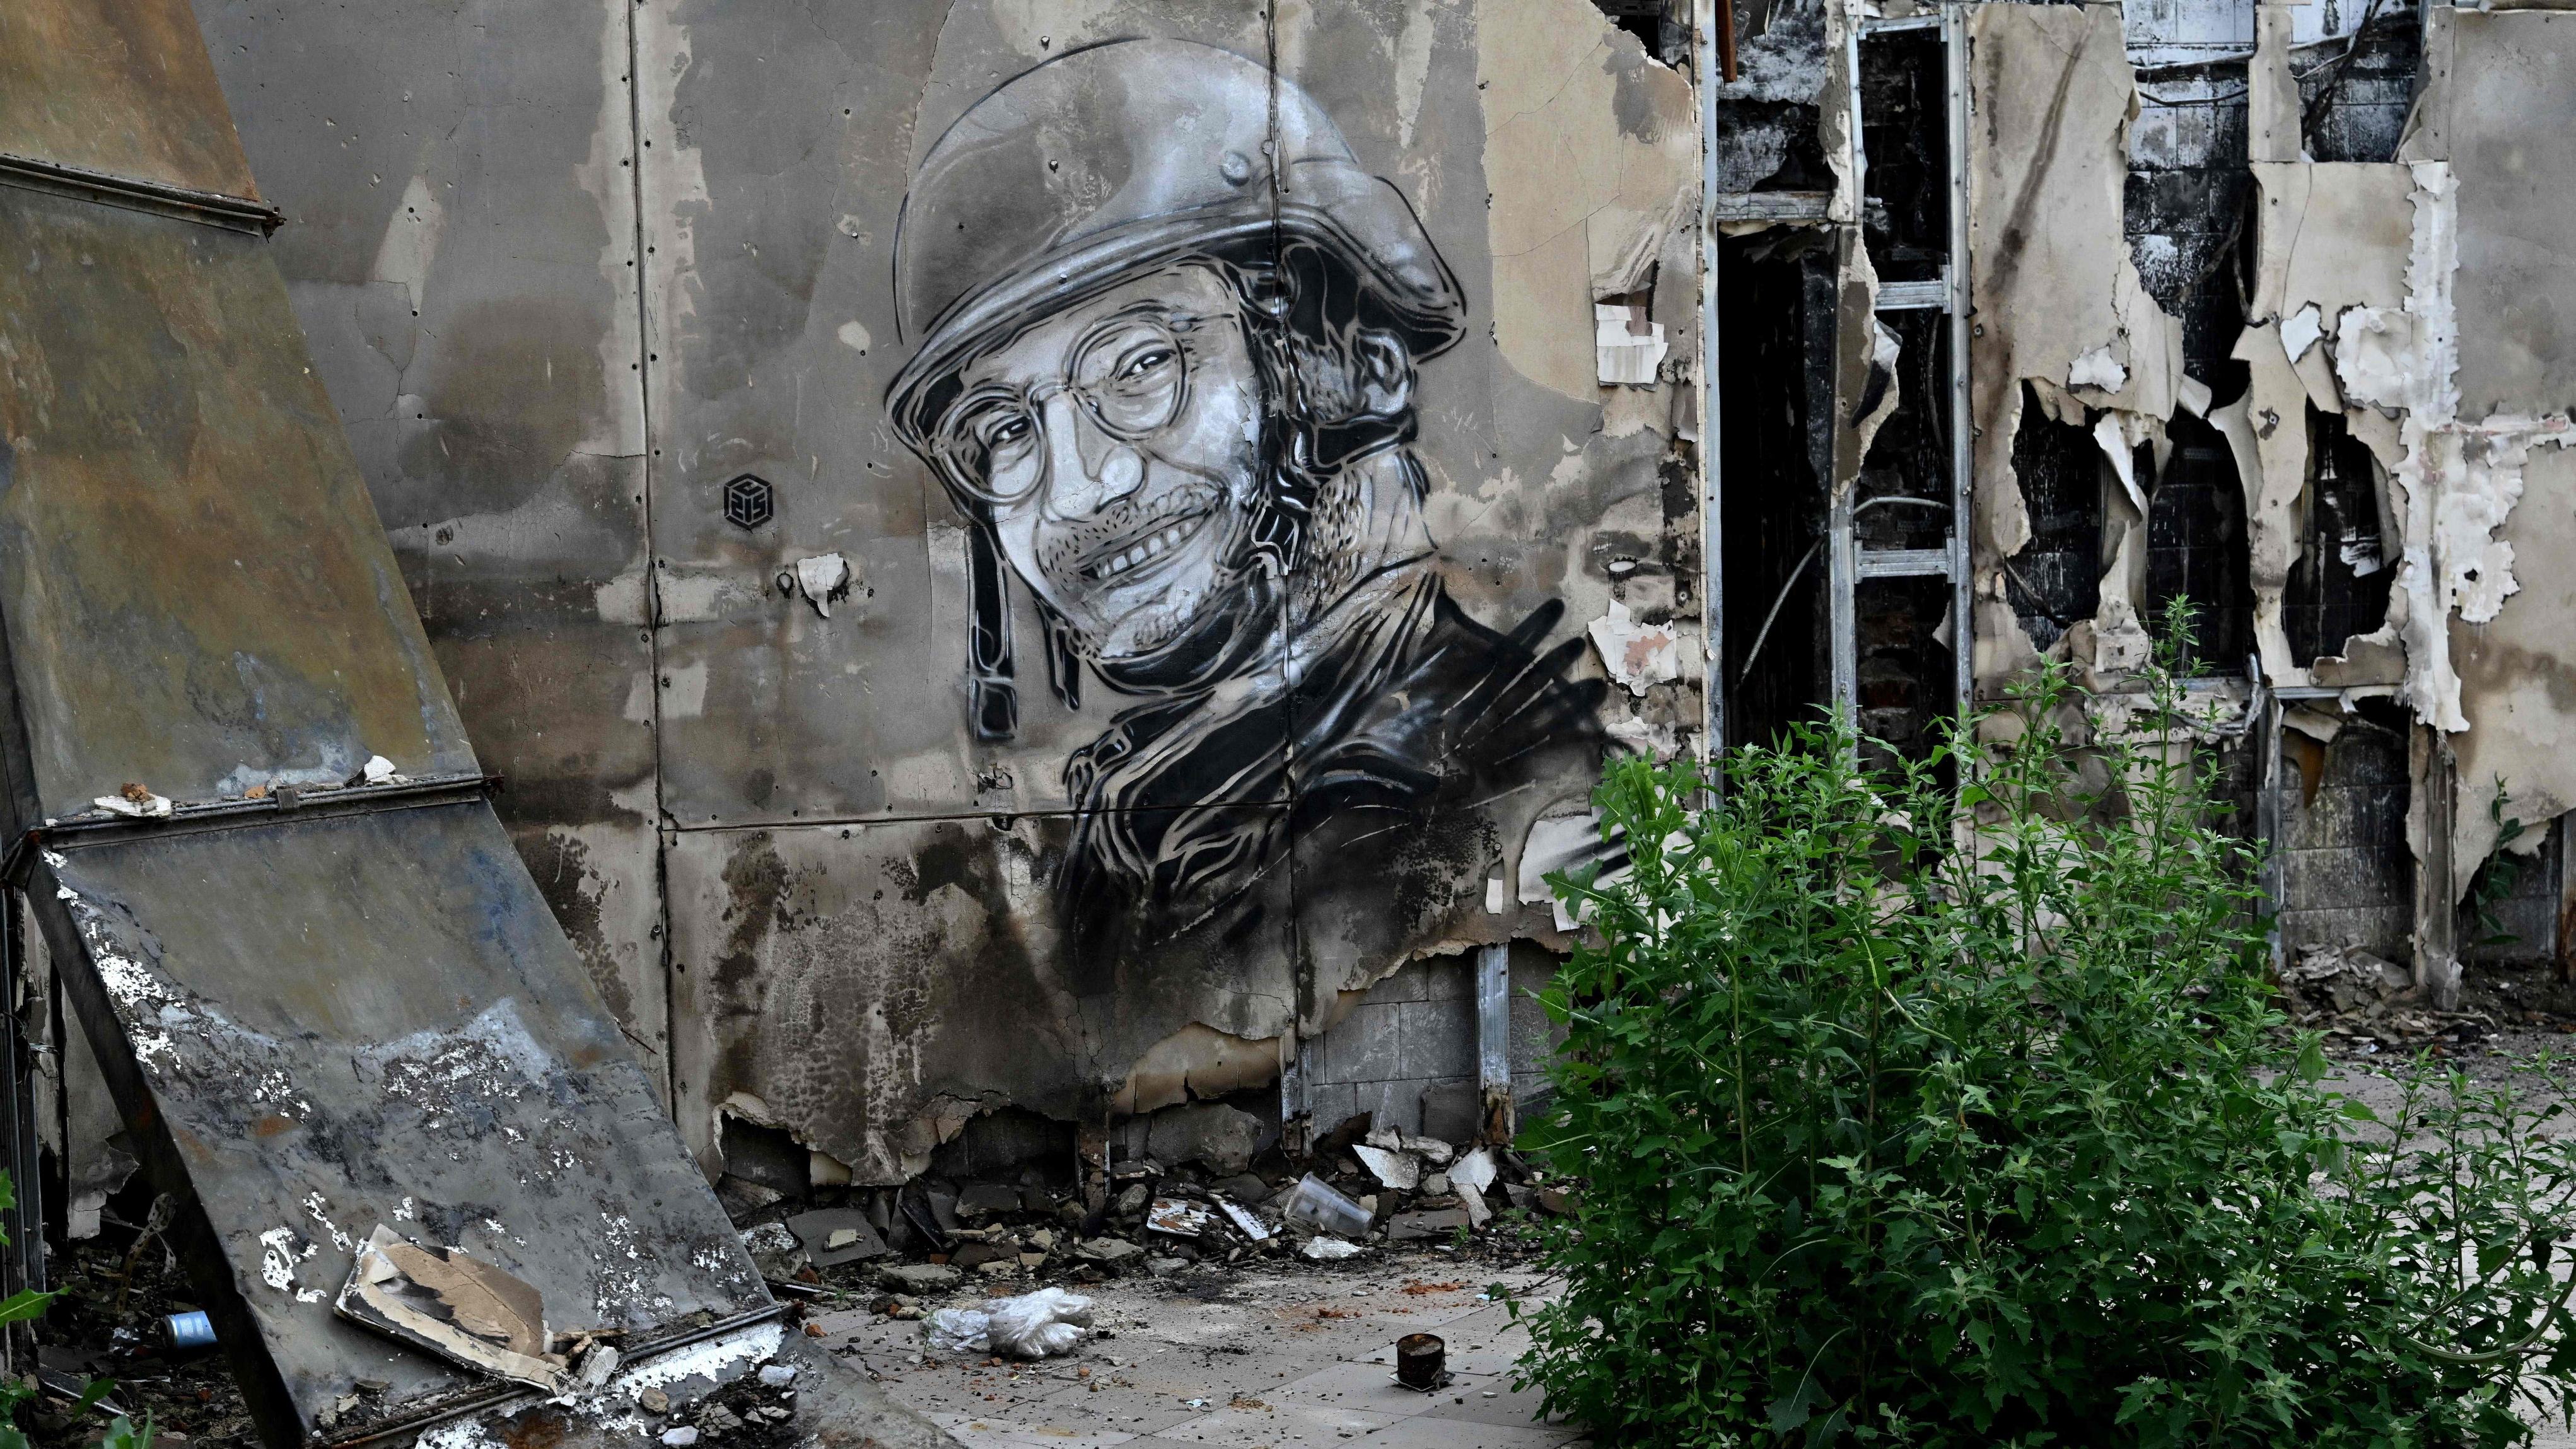 رسم تكريمي للصحفي أرمان سولدين الذي سقط قرب باخموت في أوكرانيا أثناء تغطية الحرب، بتوقيع كريستيان غيمي على جدار مقهى مدمر في ياجيدني